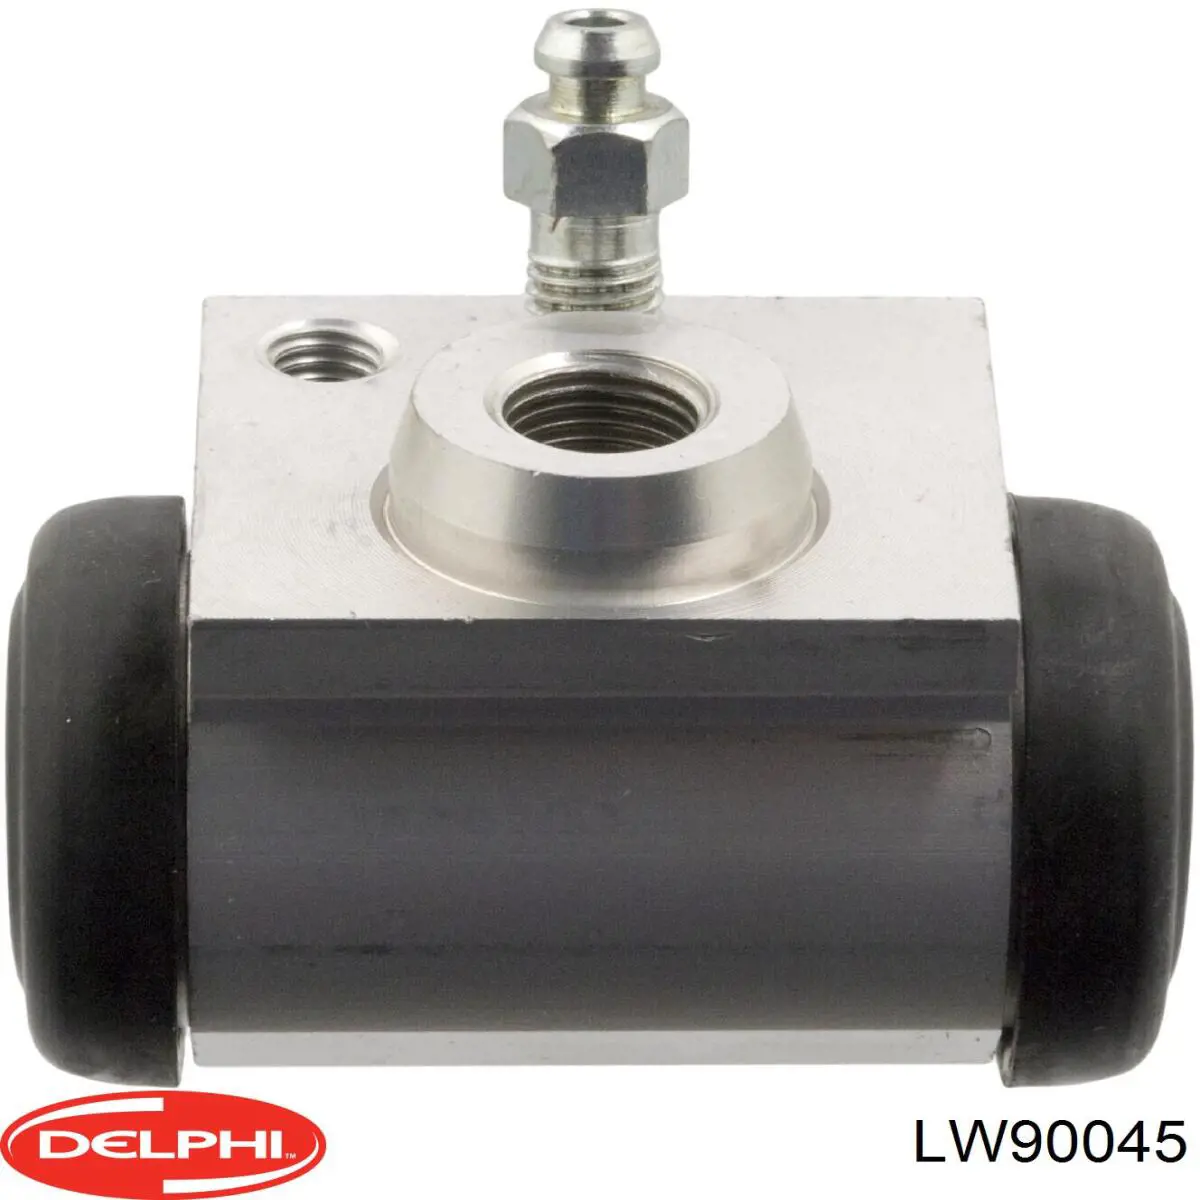 LW90045 Delphi цилиндр тормозной колесный рабочий задний